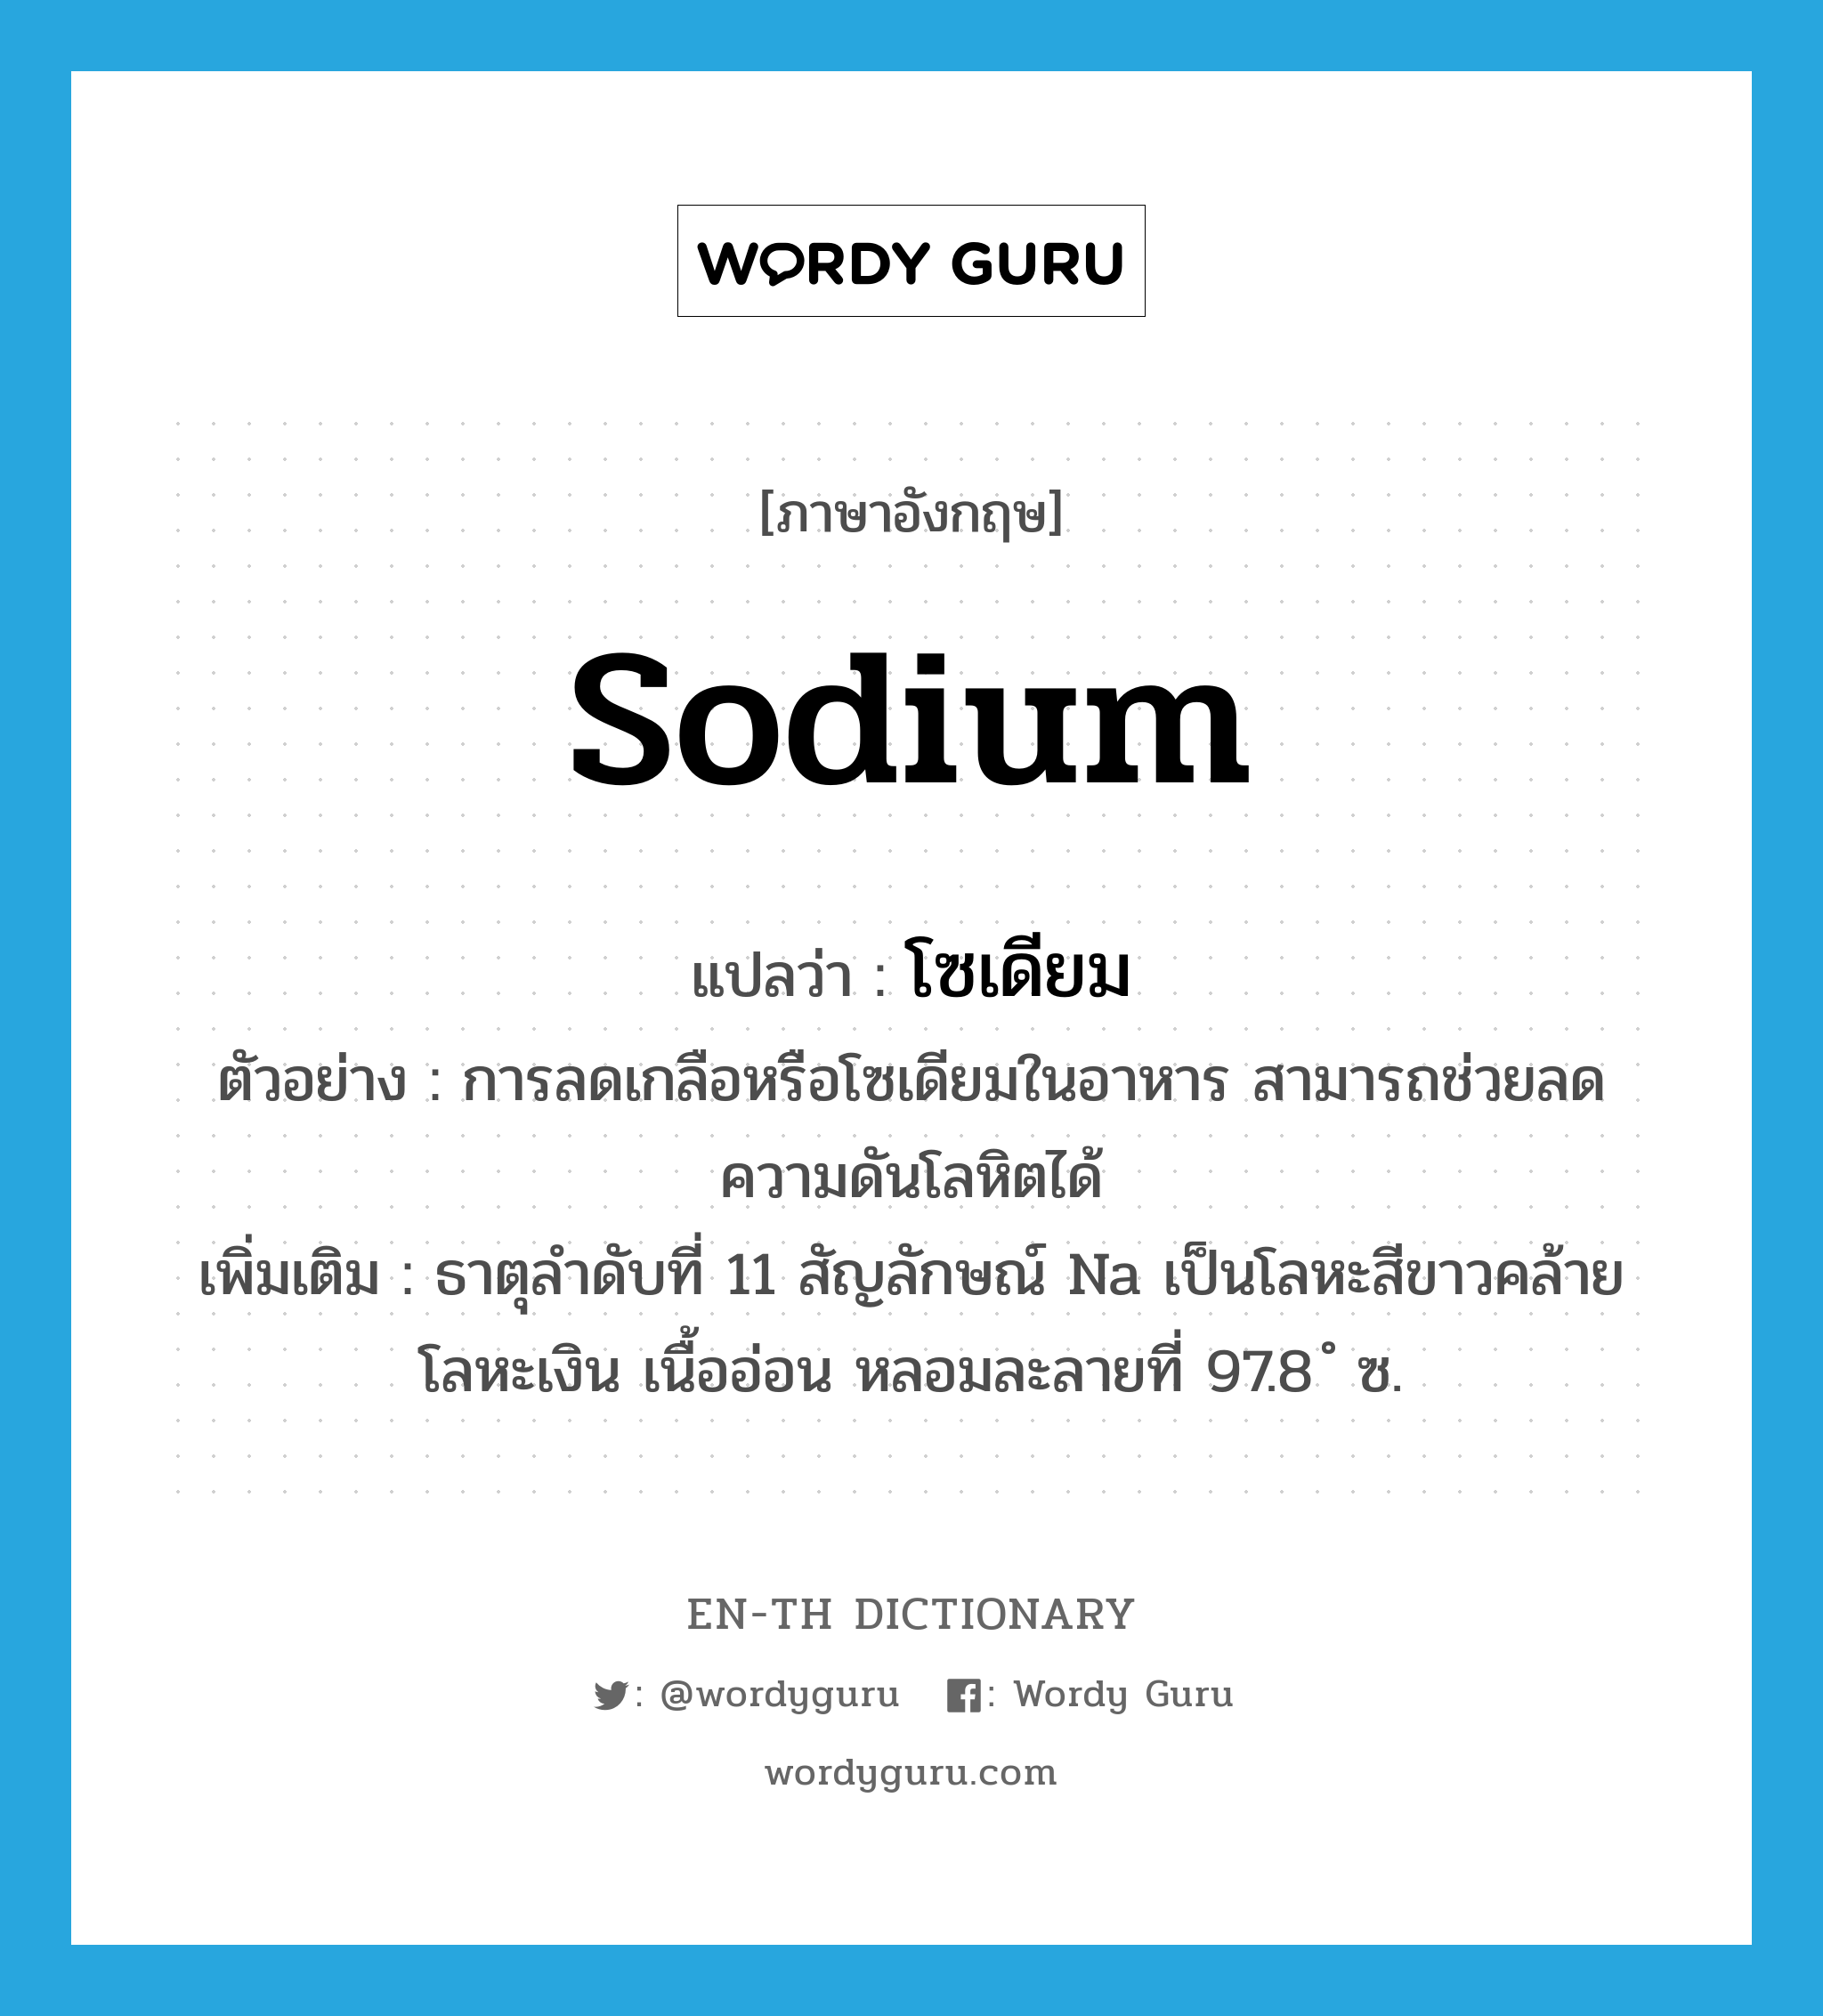 โซเดียม ภาษาอังกฤษ?, คำศัพท์ภาษาอังกฤษ โซเดียม แปลว่า sodium ประเภท N ตัวอย่าง การลดเกลือหรือโซเดียมในอาหาร สามารถช่วยลดความดันโลหิตได้ เพิ่มเติม ธาตุลำดับที่ 11 สัญลักษณ์ Na เป็นโลหะสีขาวคล้ายโลหะเงิน เนื้ออ่อน หลอมละลายที่ 97.8 ํ ซ. หมวด N